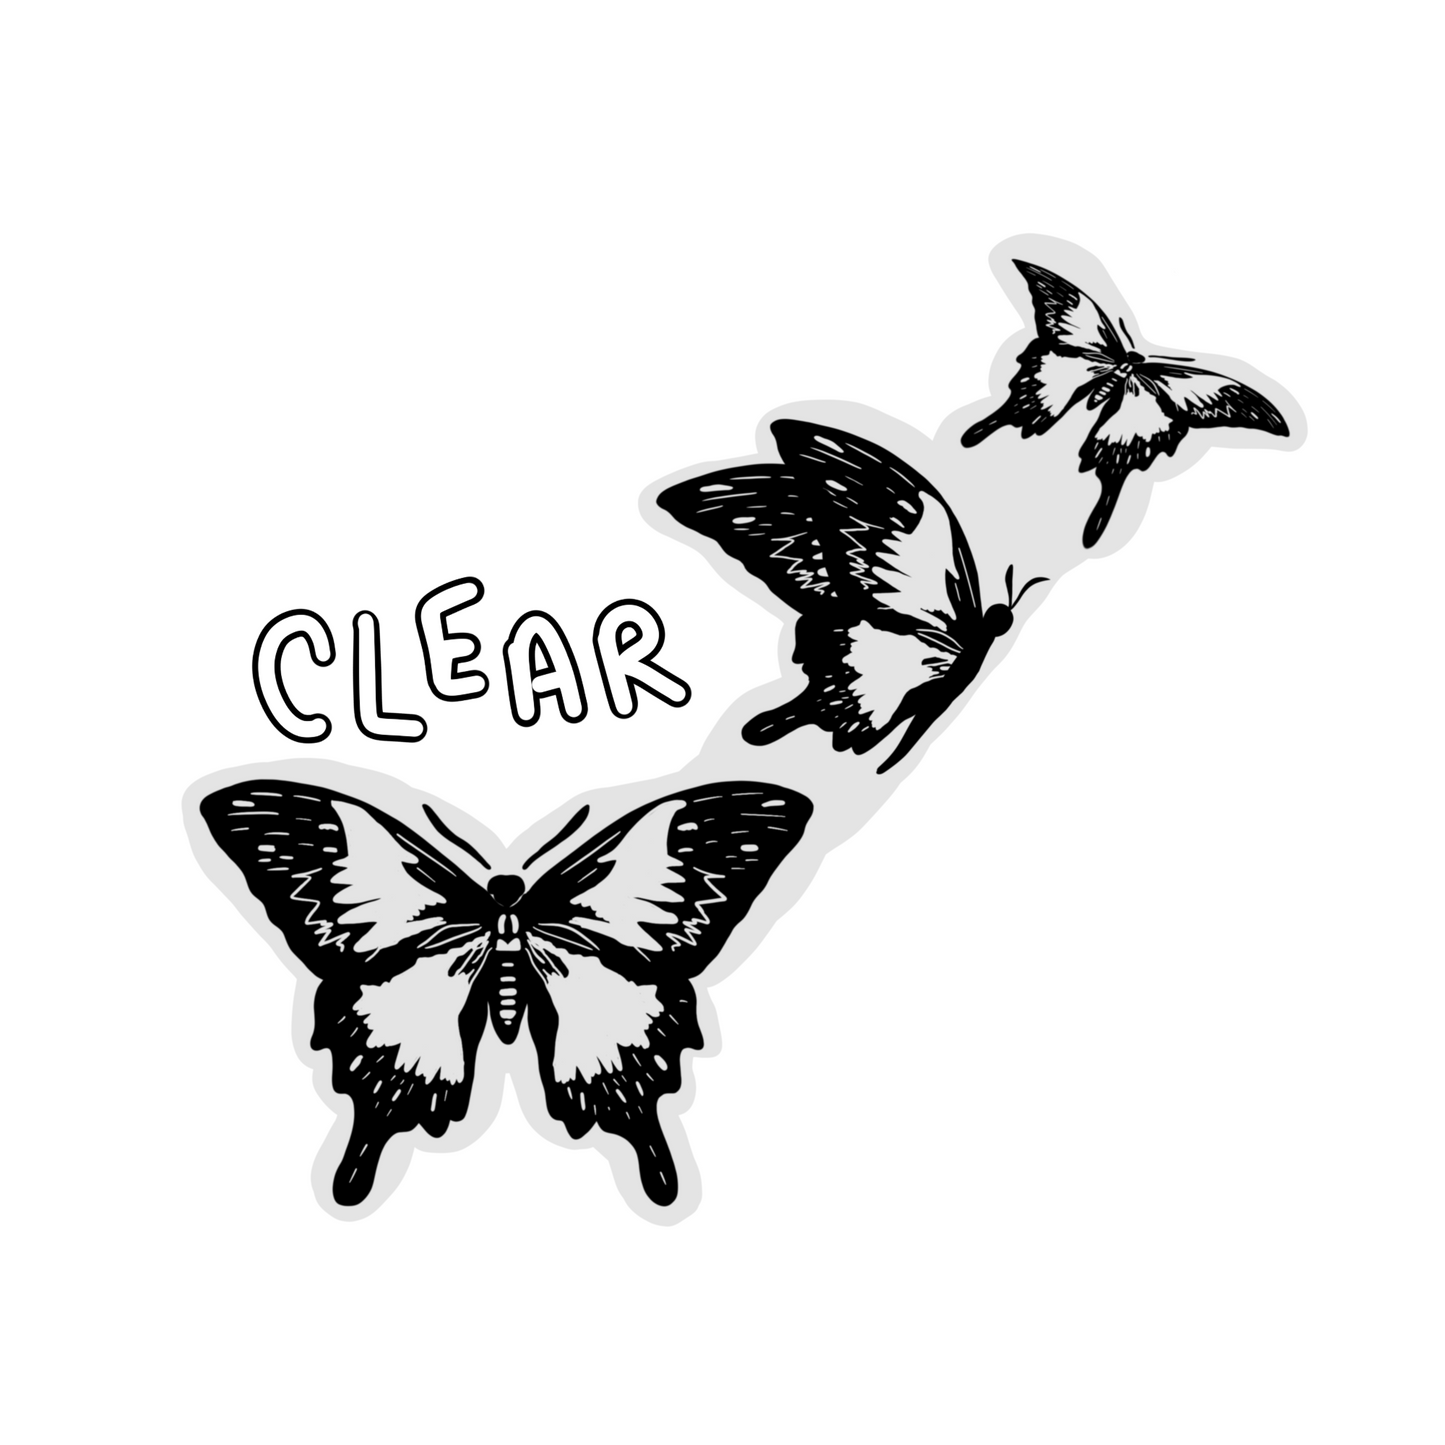 CLEAR 3 Black Butterfly Waterproof Vinyl Sticker